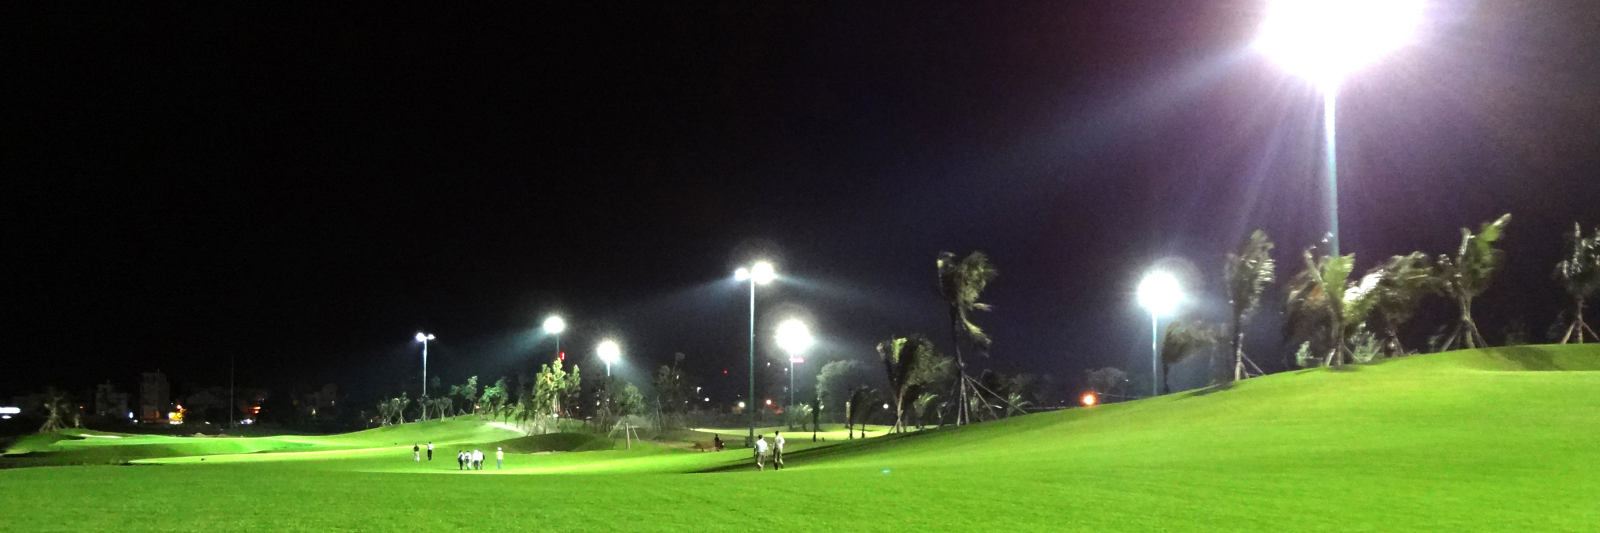 Hệ thông chiếu sáng sân golf